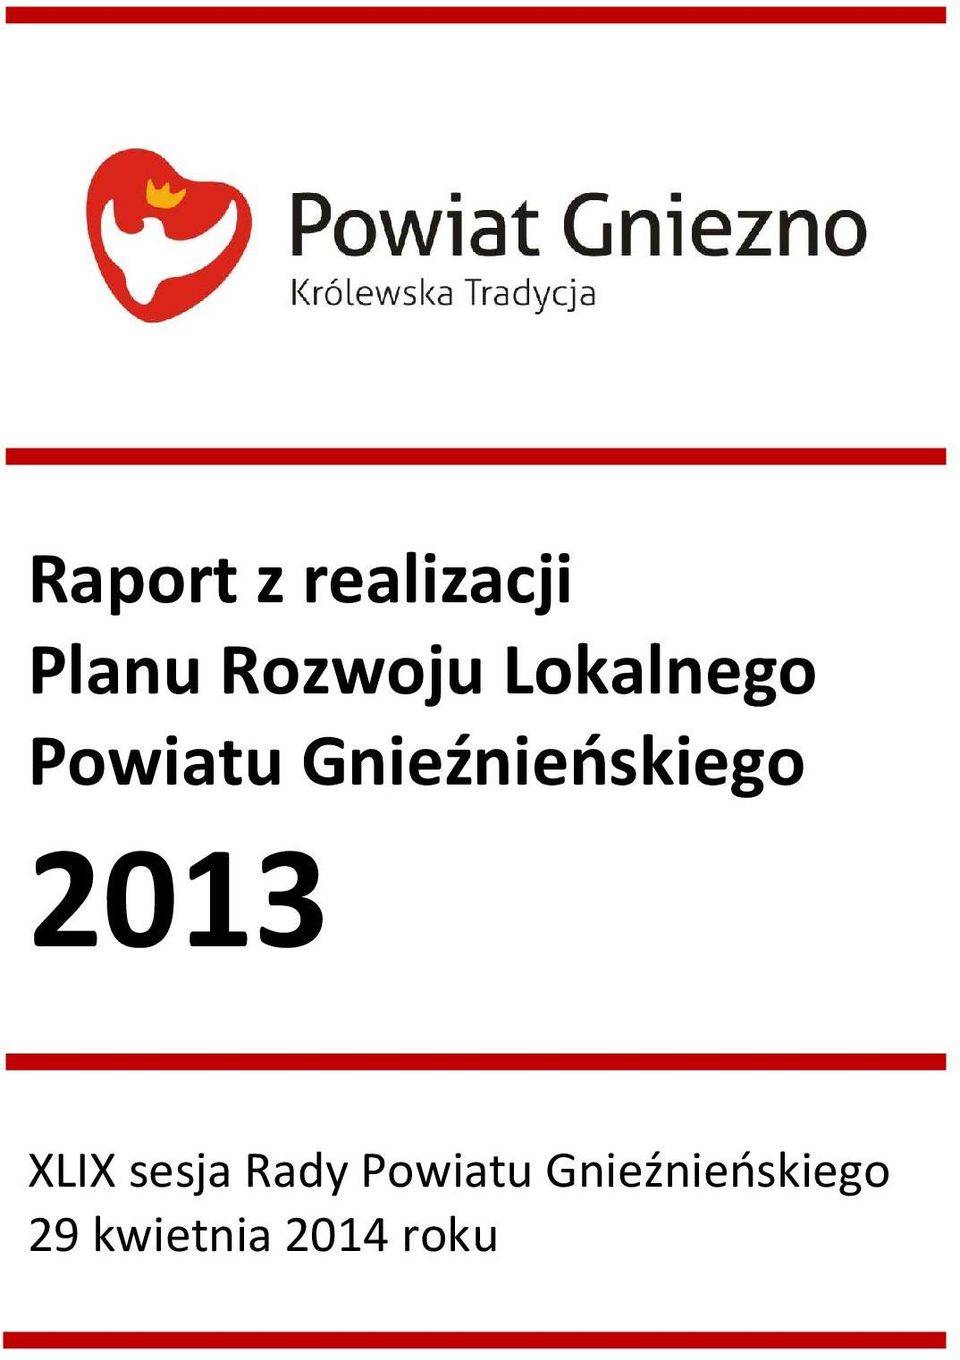 2013 XLIX sesja Rady Powiatu